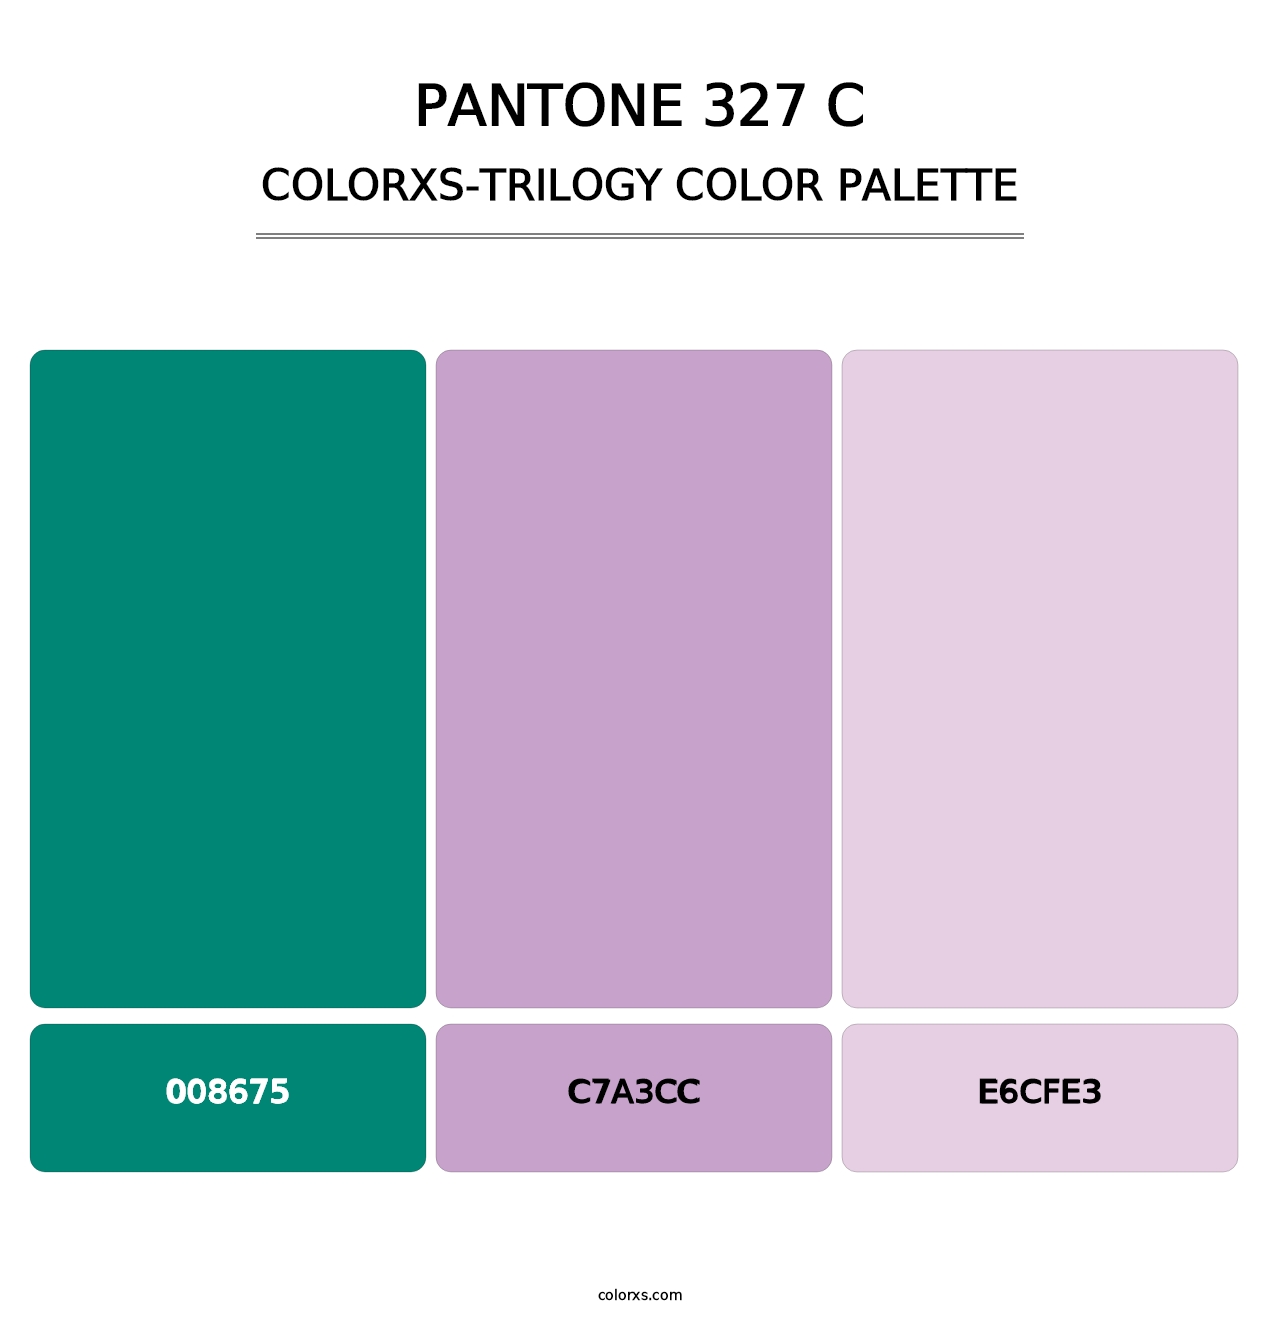 PANTONE 327 C - Colorxs Trilogy Palette